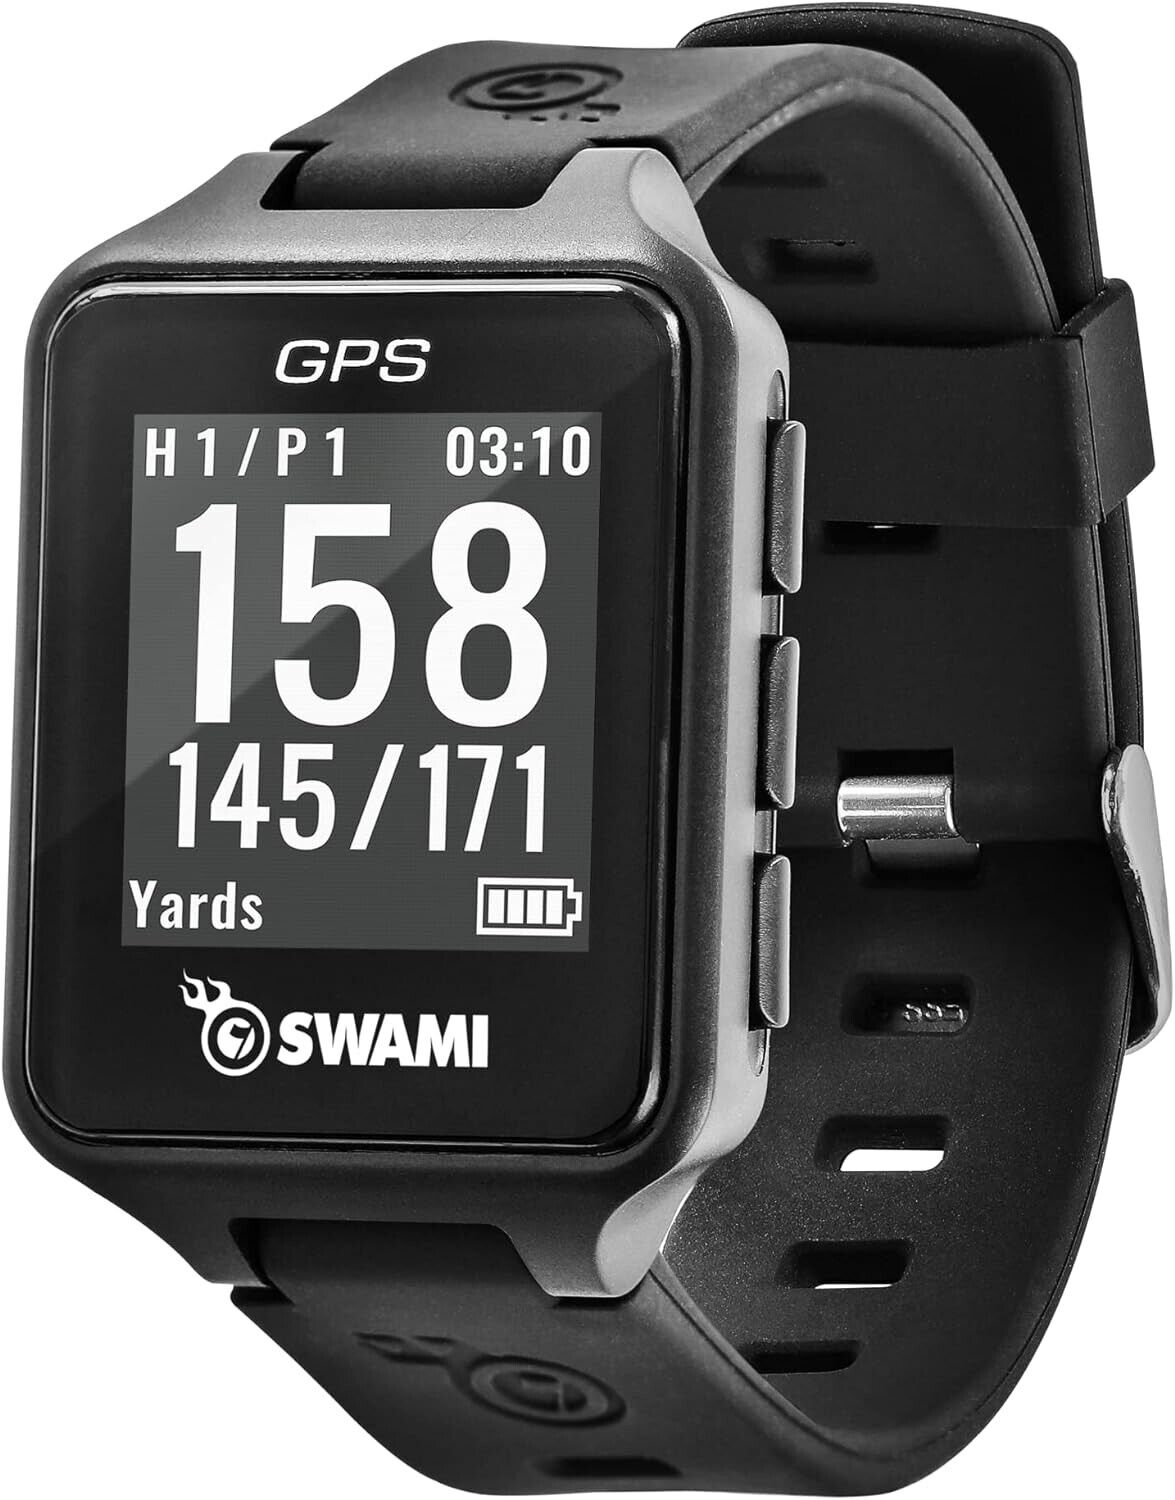 IZZO Golf Swami Golf GPS Watch, Black